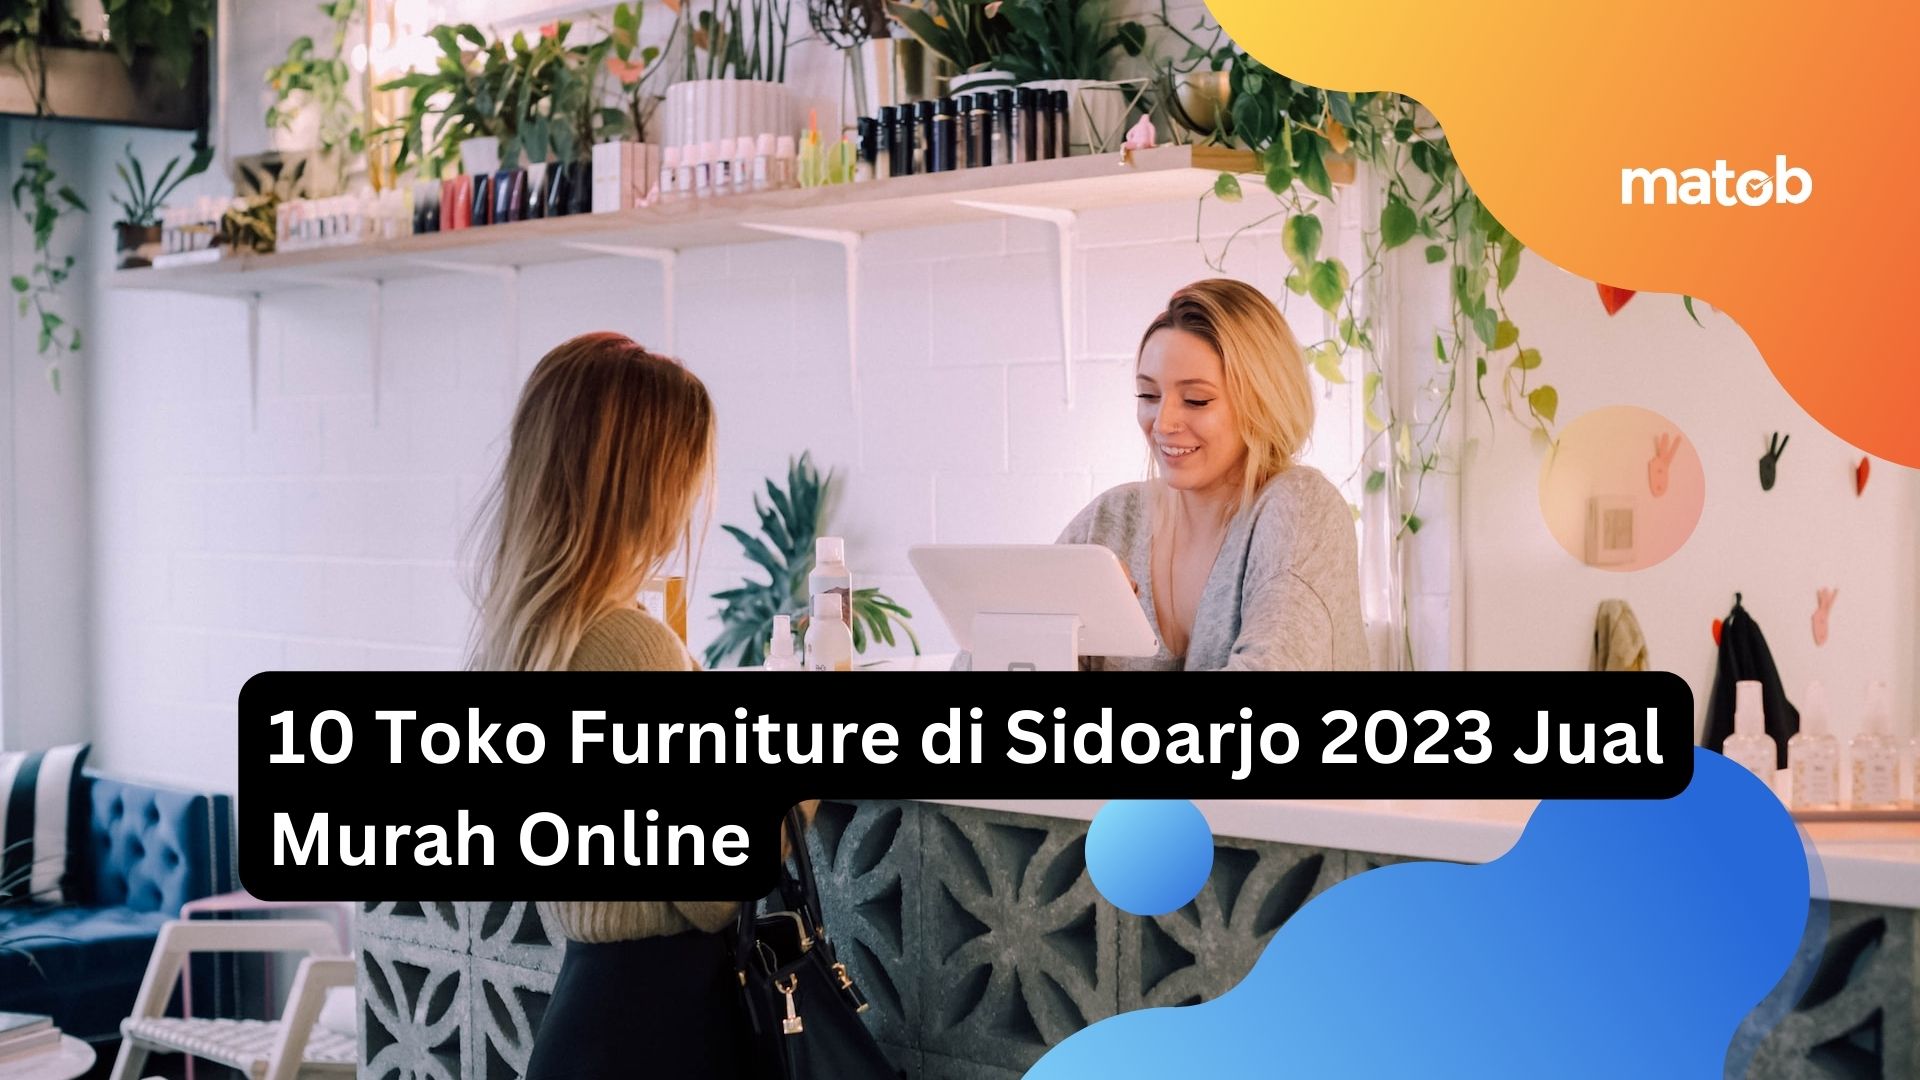 10 Toko Furniture di Sidoarjo 2023 Jual Murah Online